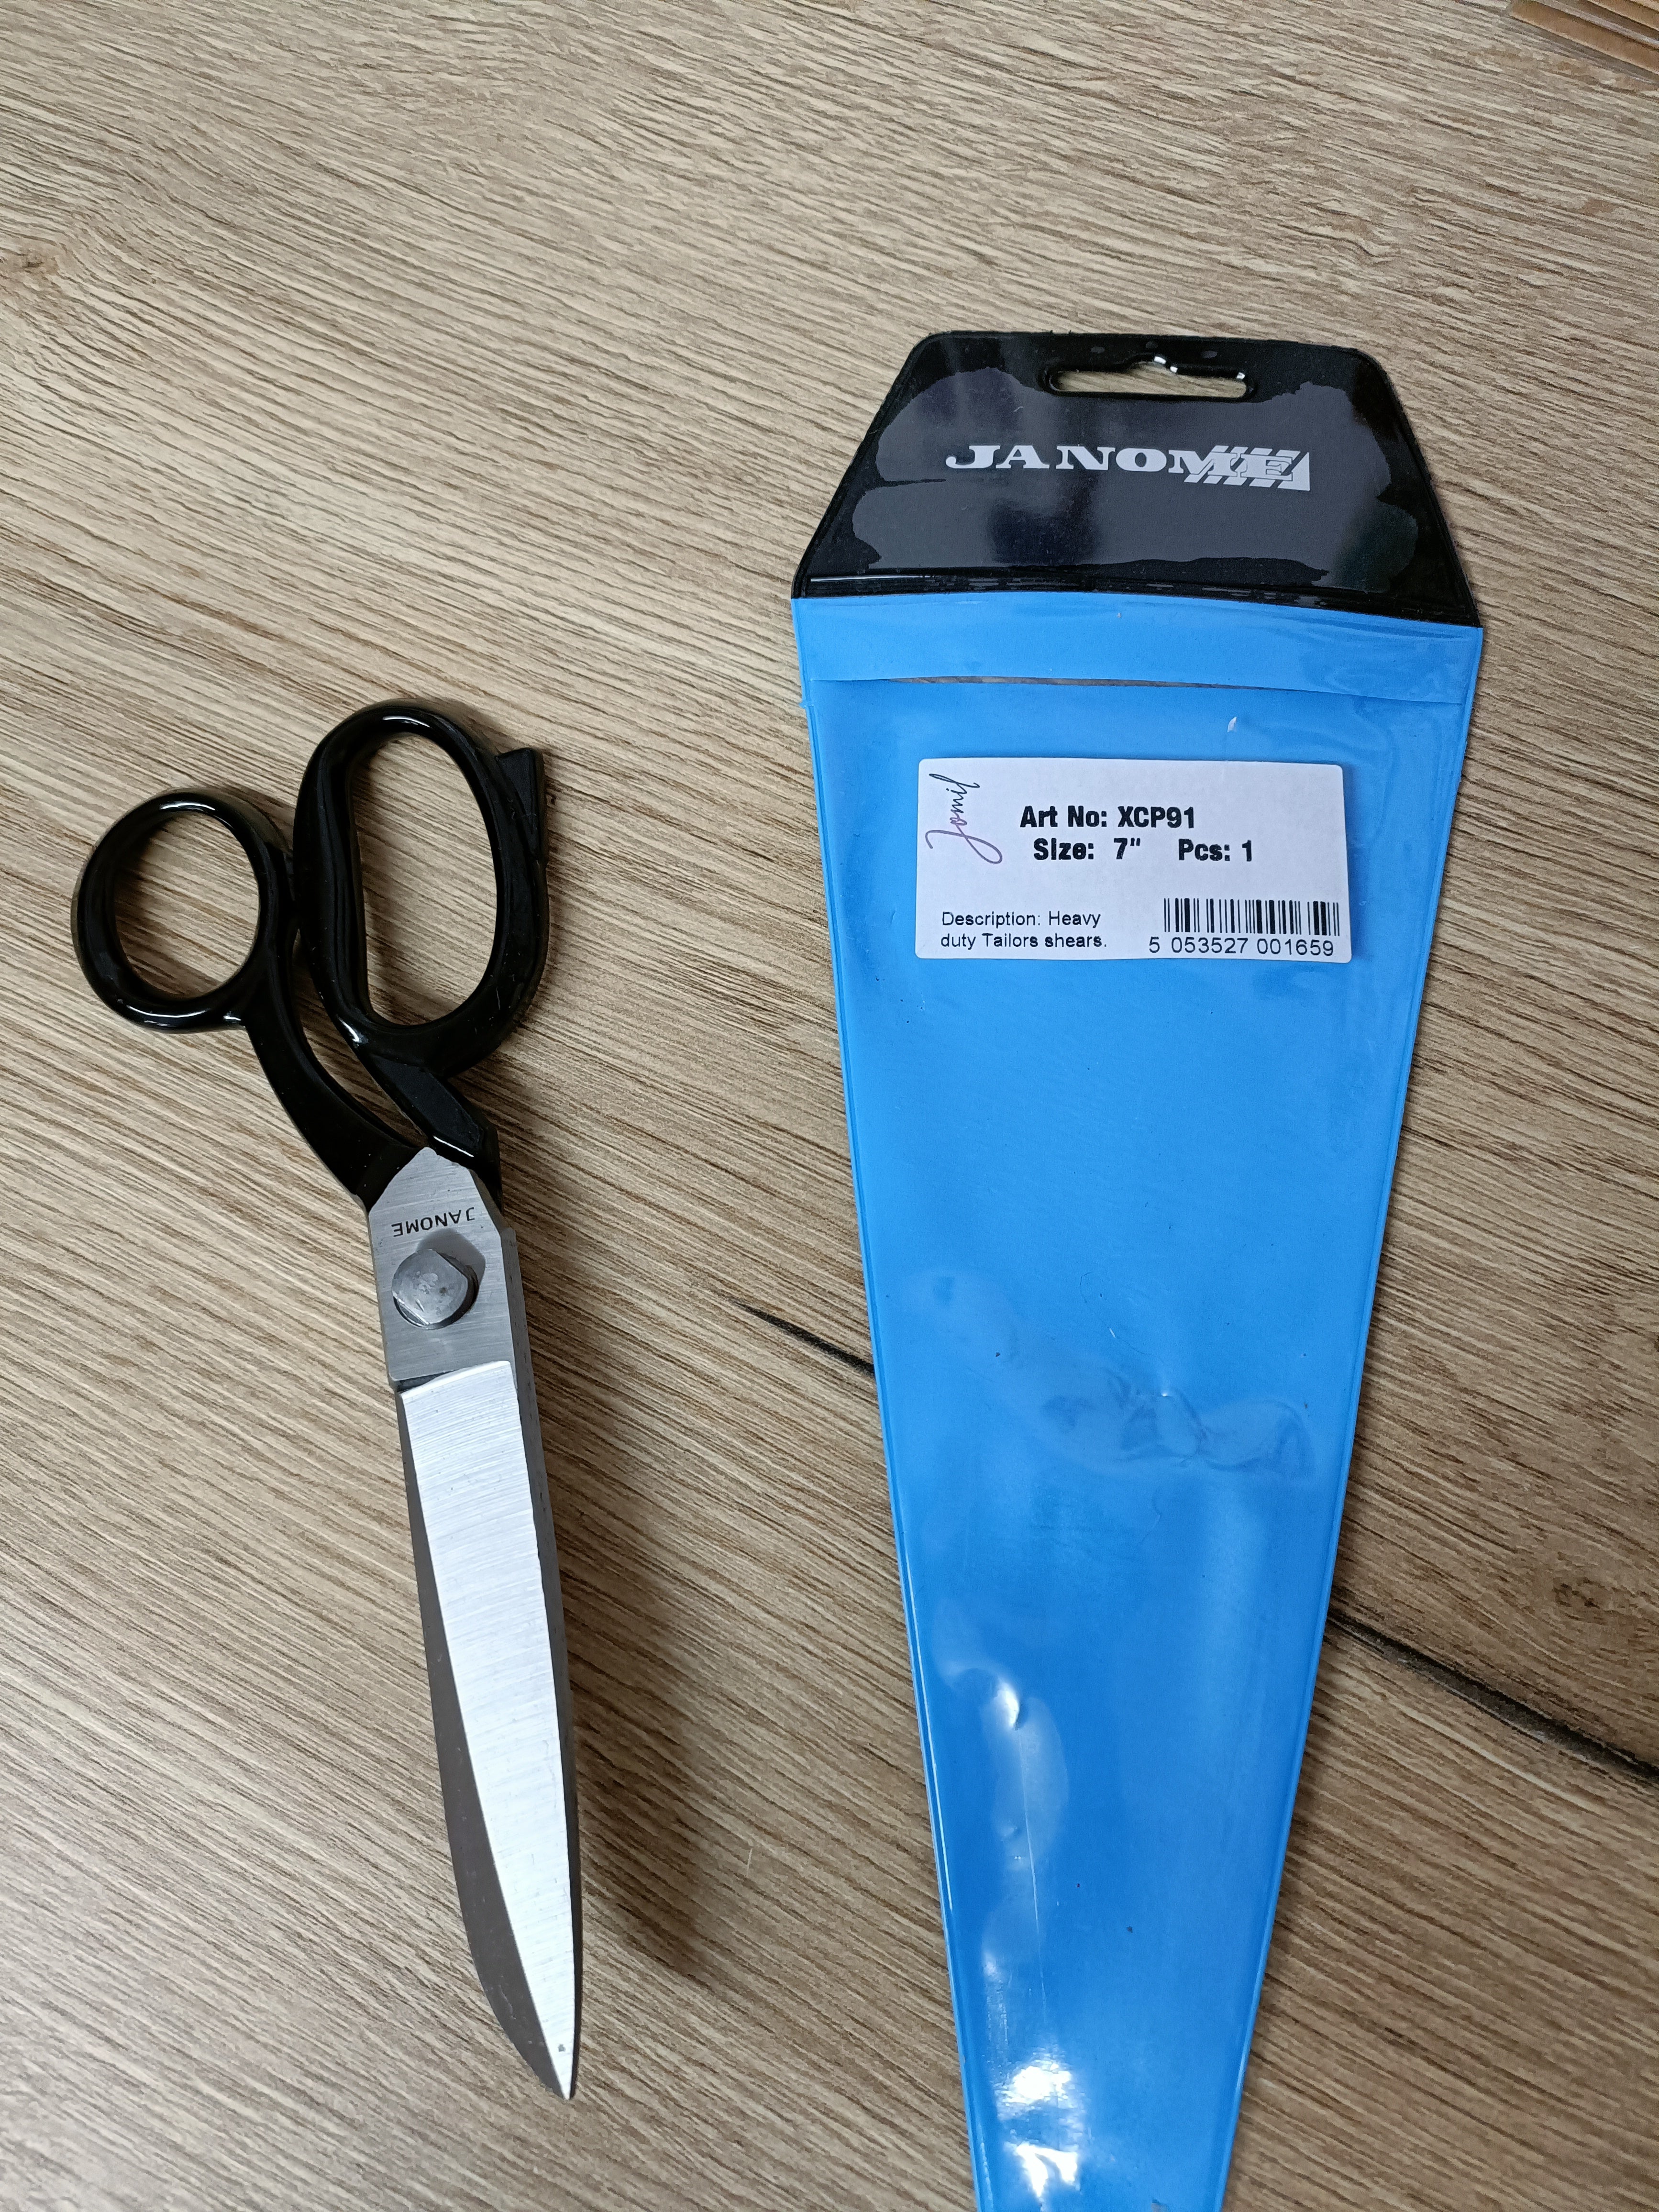 Small dress-making scissors